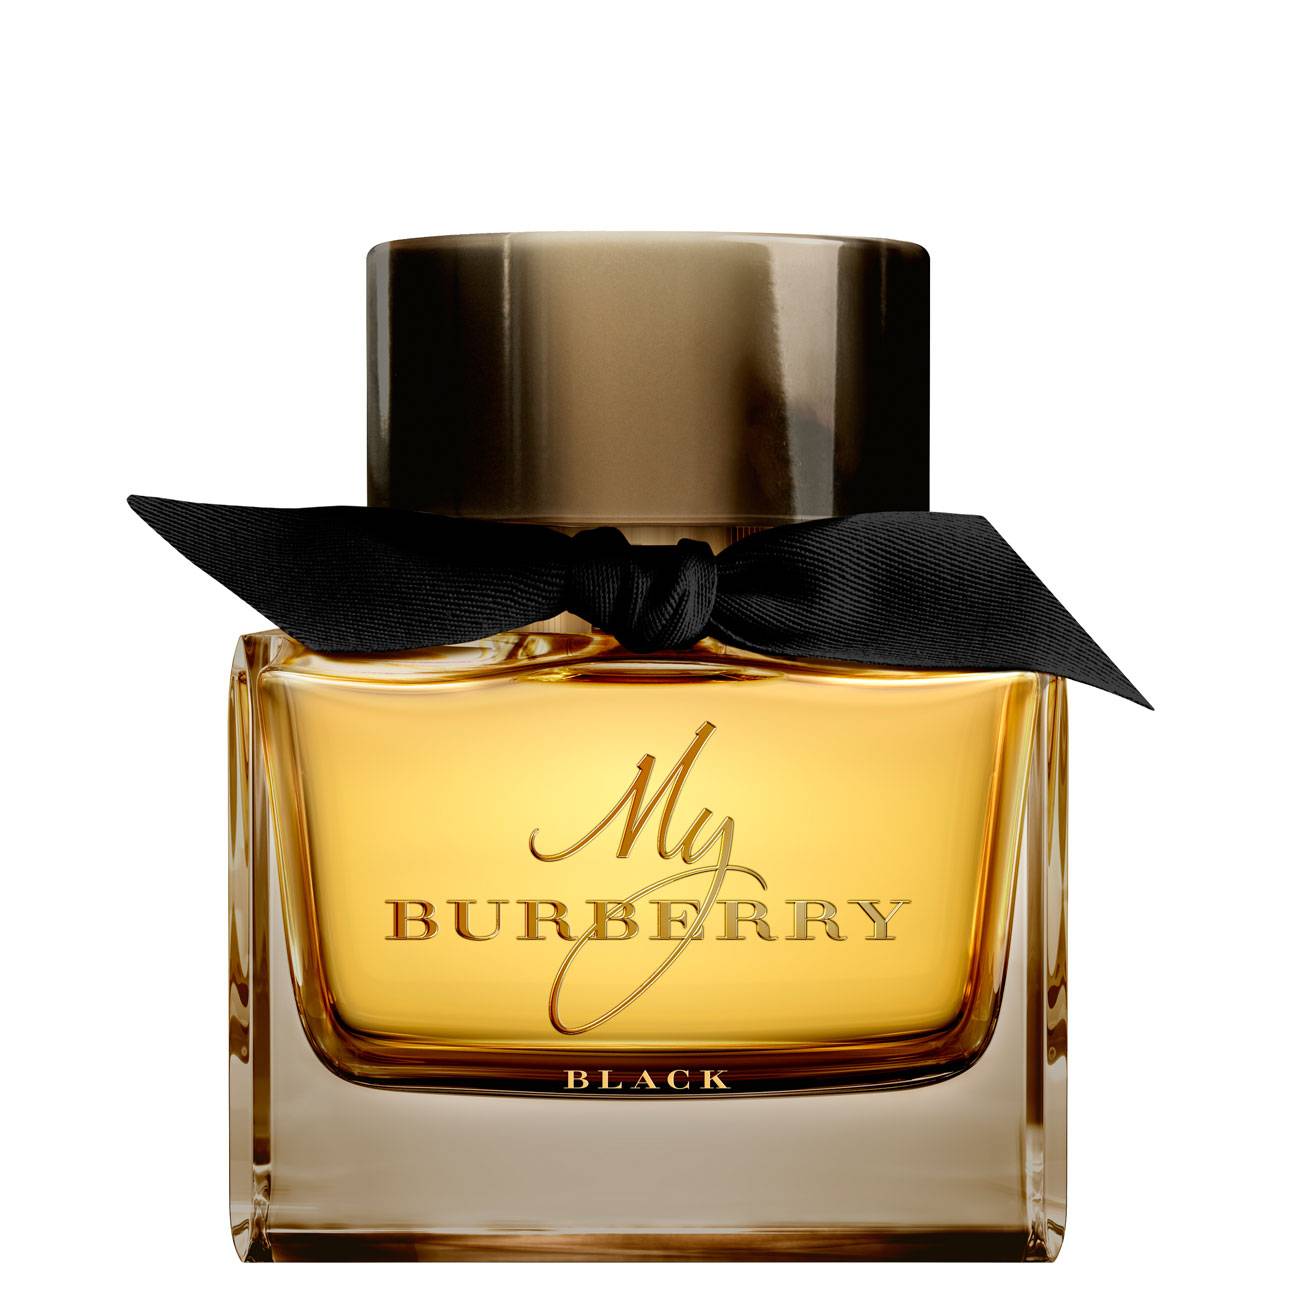 Apa de Parfum Burberry MY BURBERRY BLACK 90ml cu comanda online